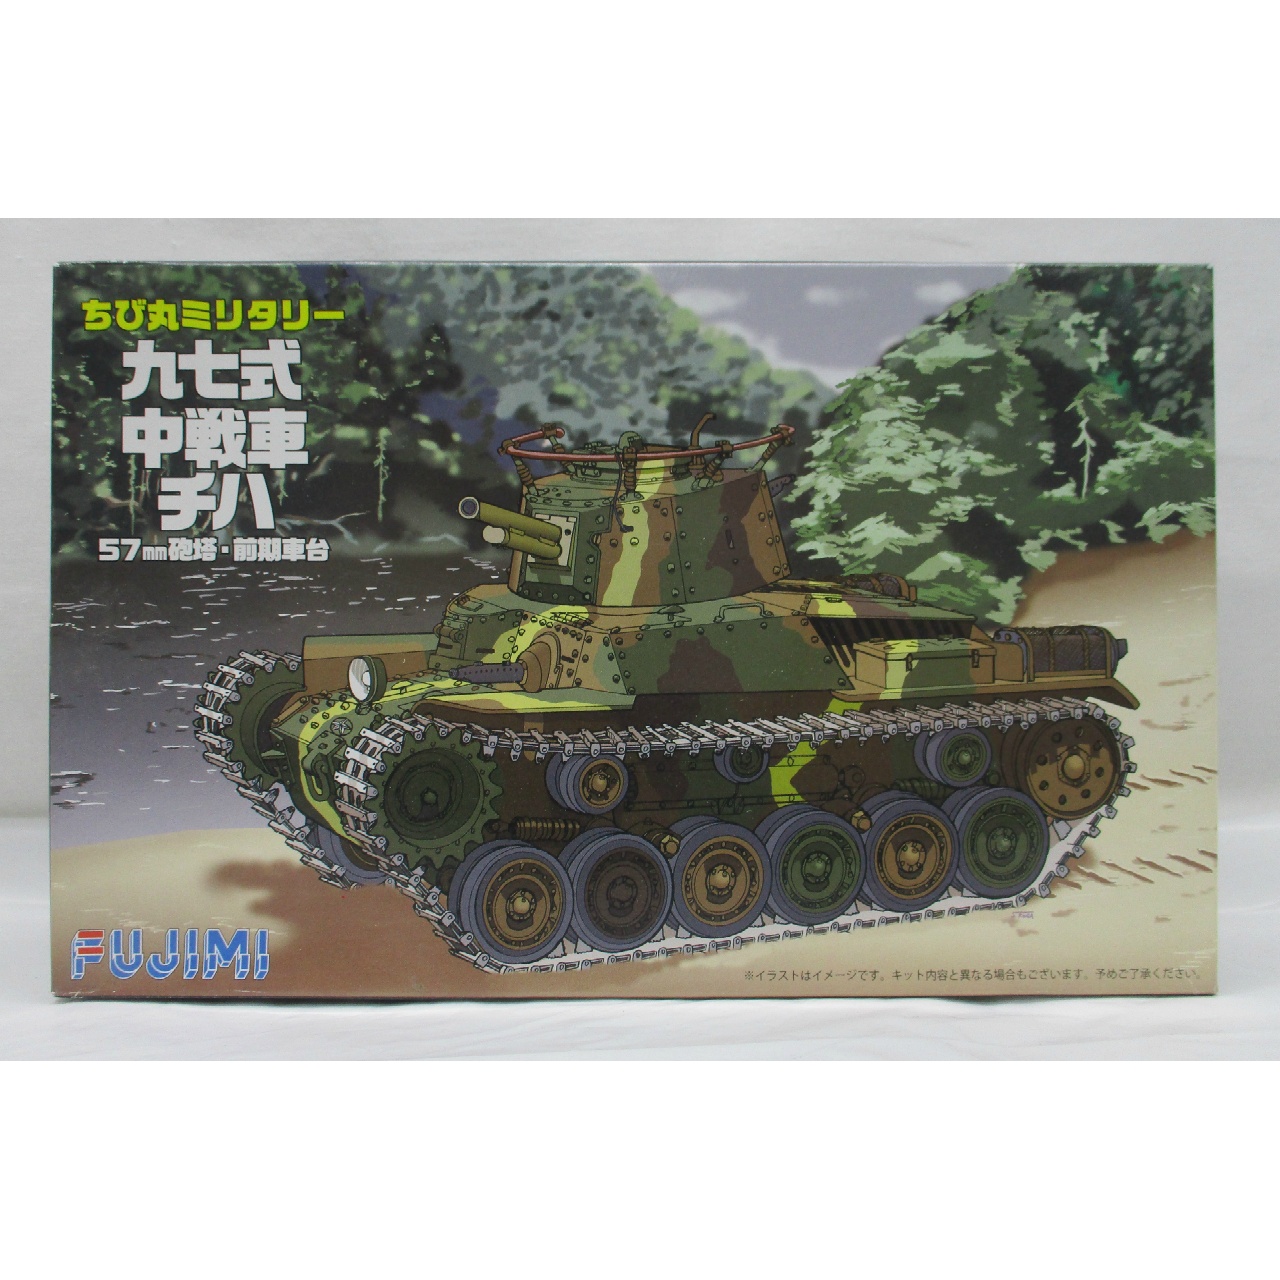 JUNGLE Special Collectors Shop / Tank Models